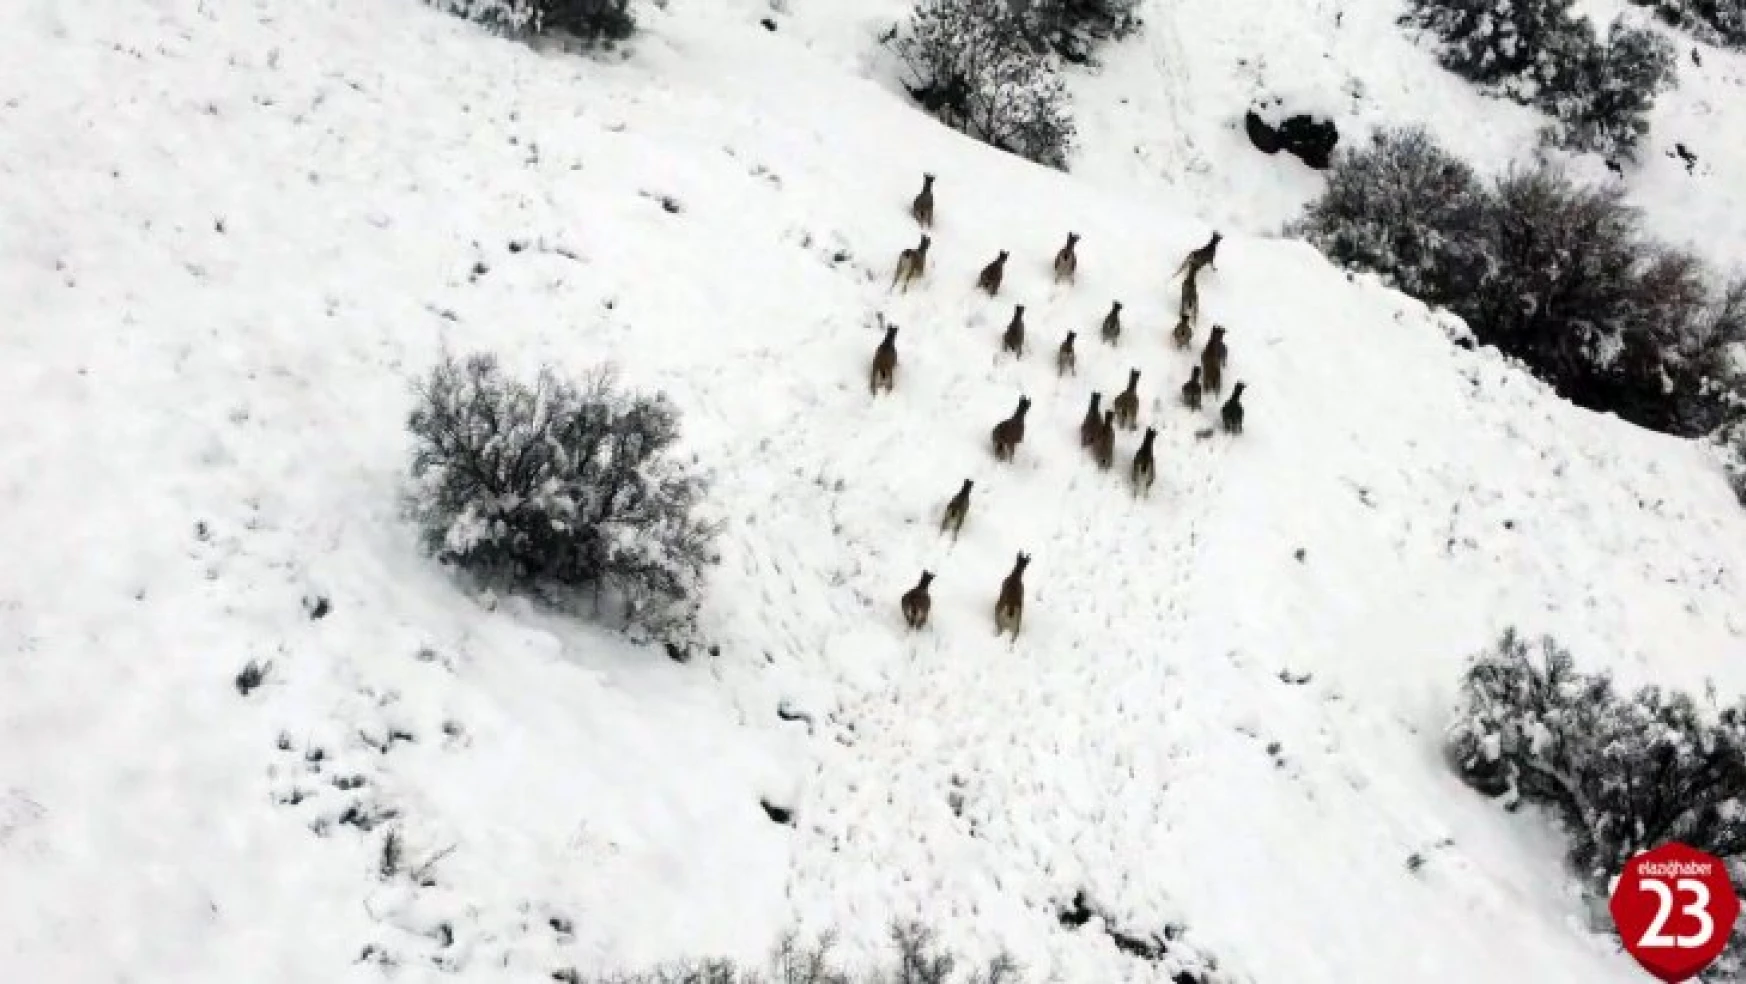 Ağın'da Kar Üzerinde Yiyecek Arayan Dağ Keçileri Dron İle Görüntülendi